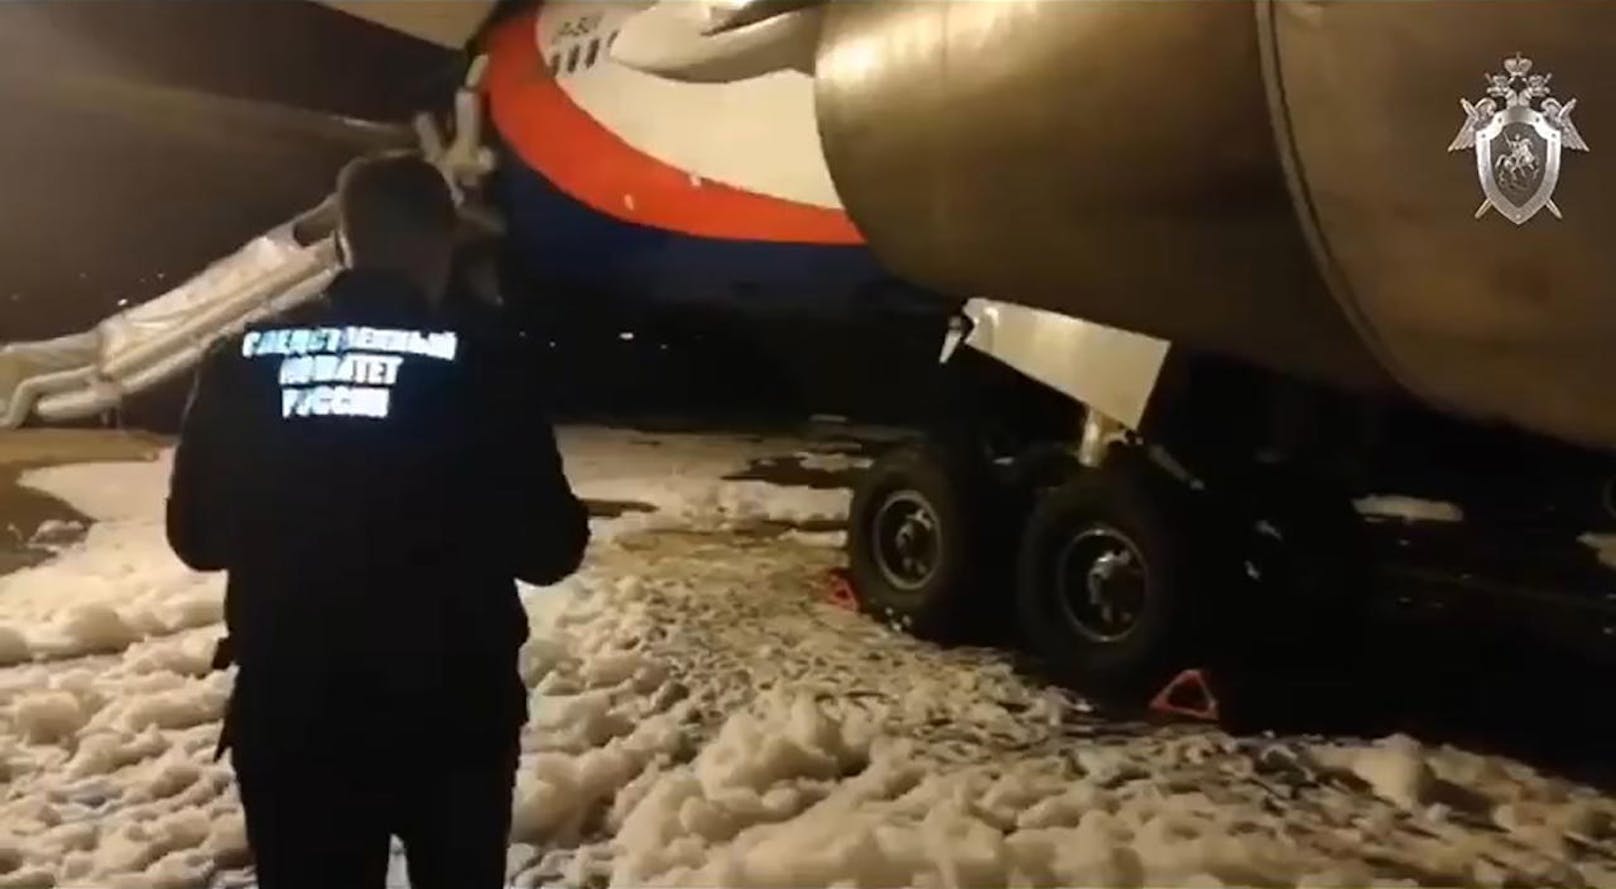 Eine Massenpanik während der Evakuierung dieser Boeing 767-300 der russischen Azur Air endete am 26.12.2019 am Flughafen Barnaul mit 54 teils schwer verletzten Passagieren.